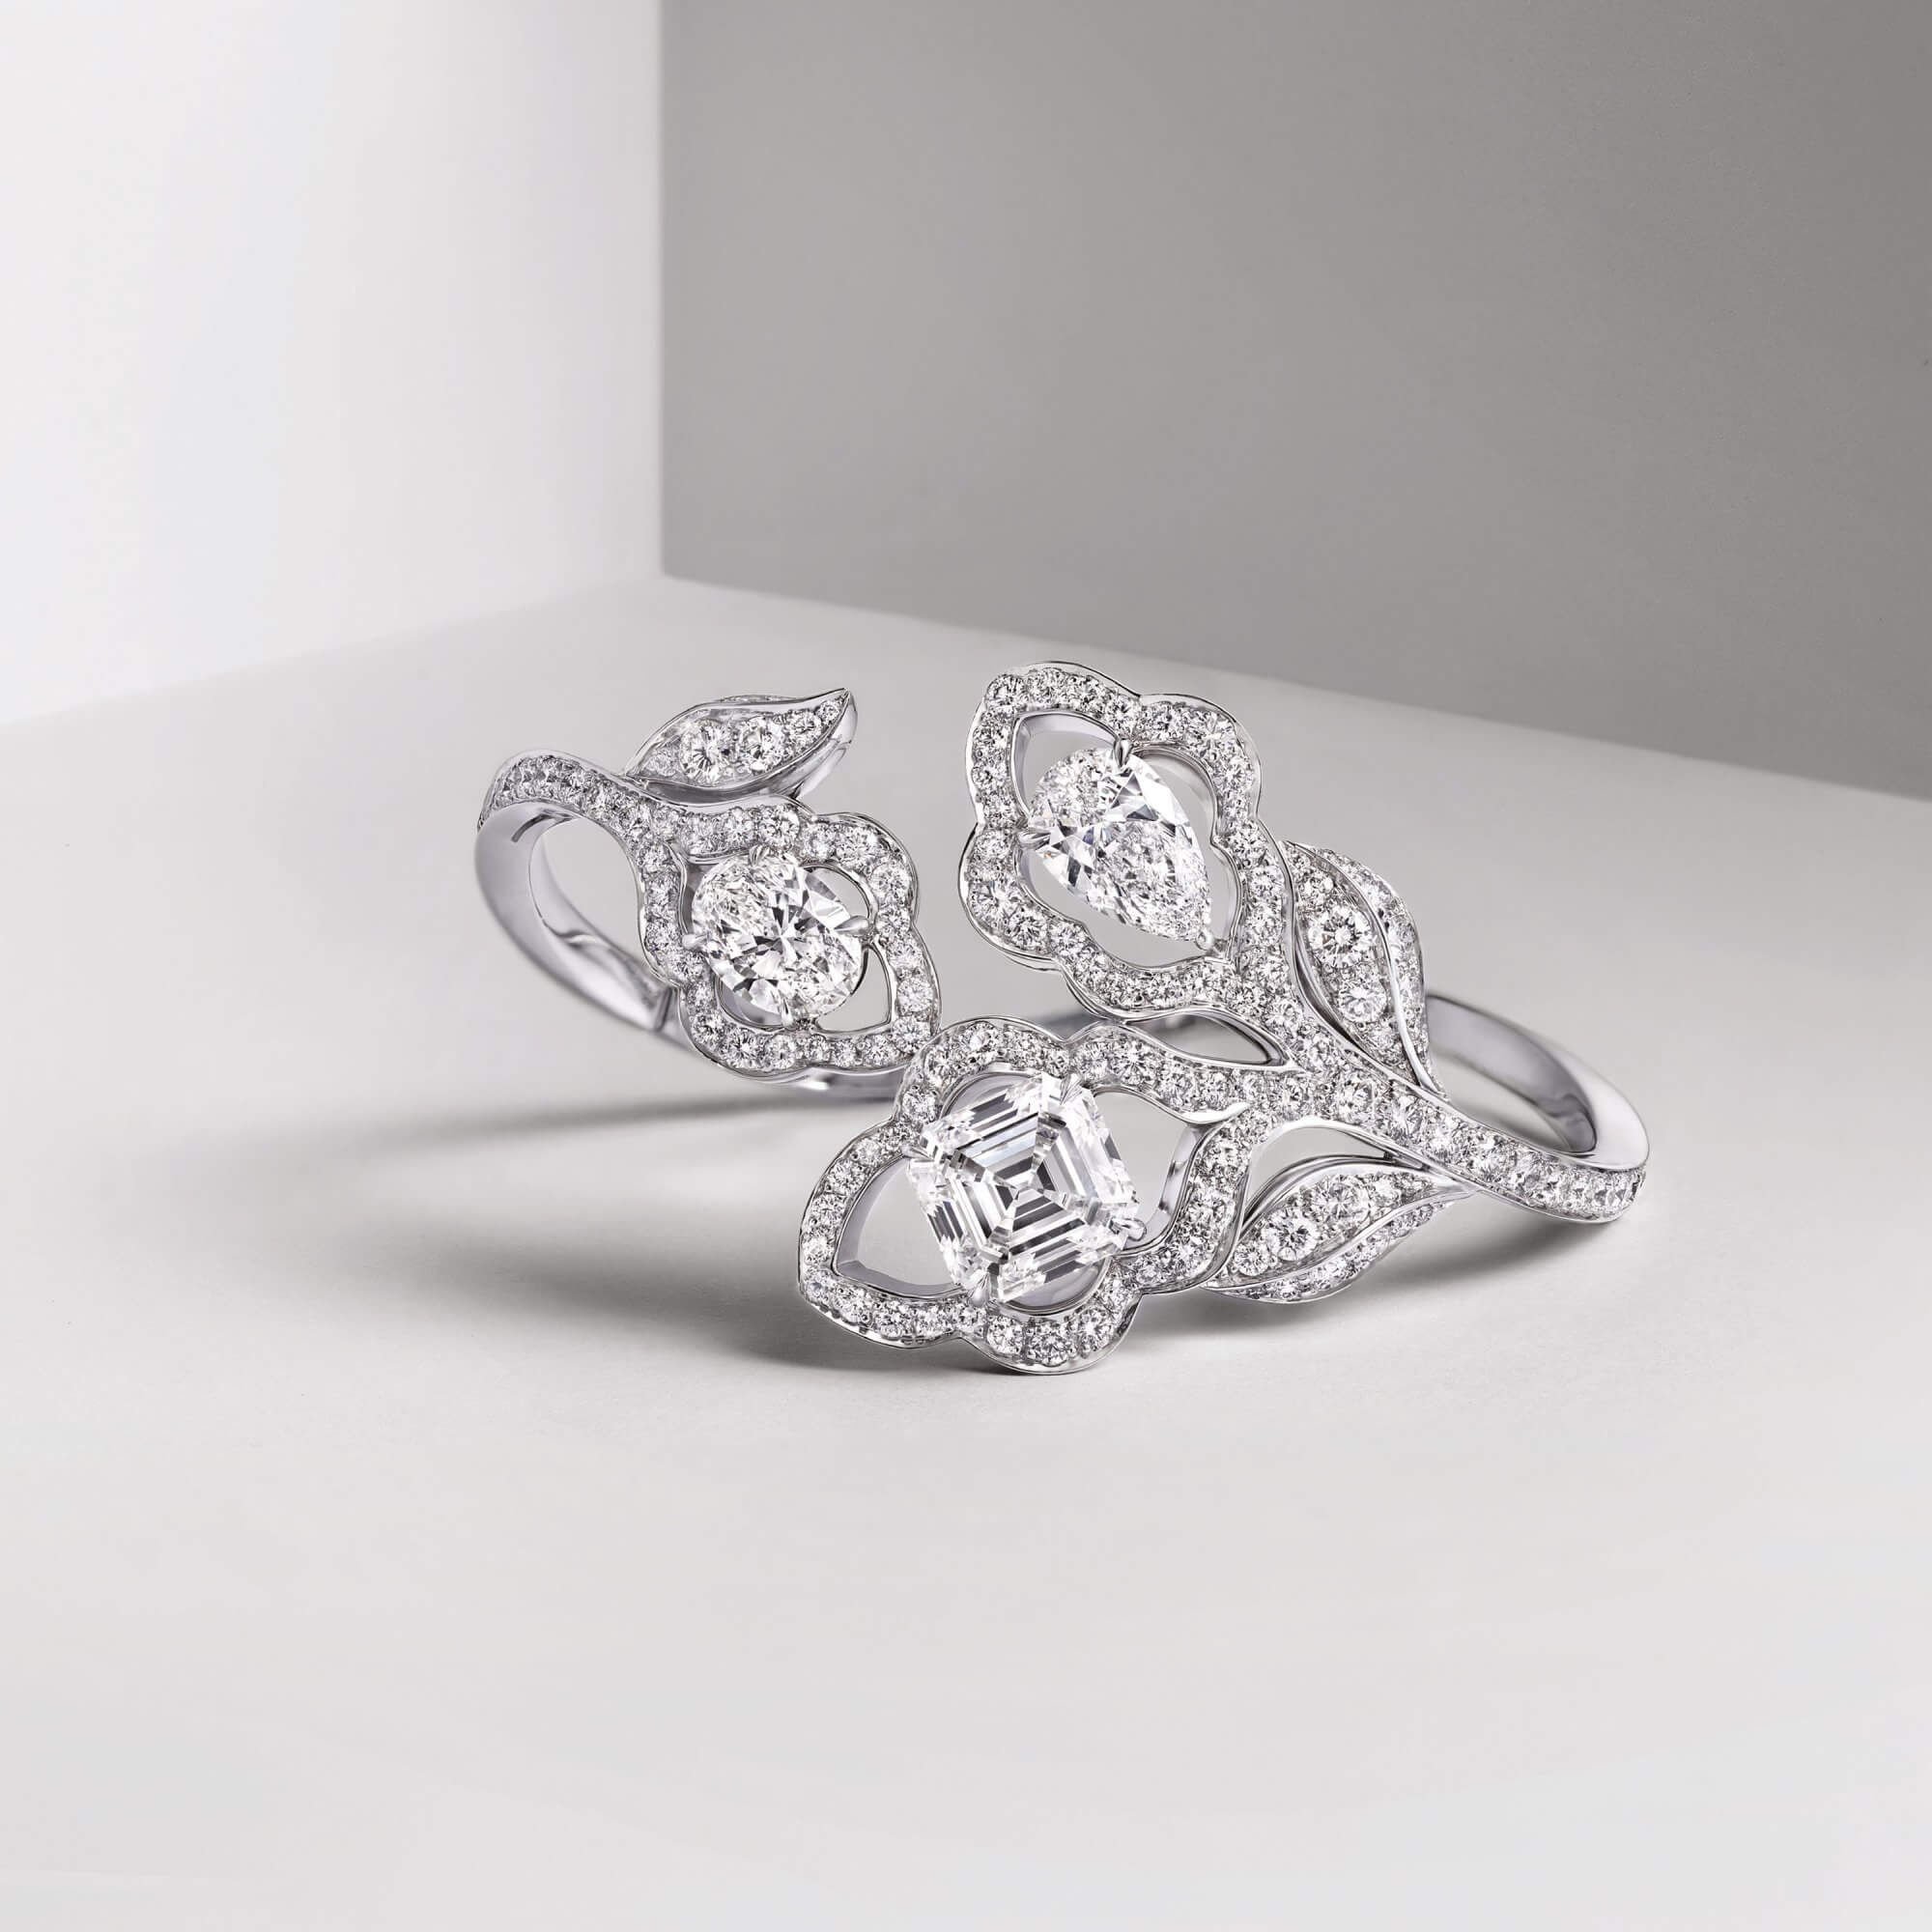 Graff diamond bracelet featuring a trio of pear shape oval and emerald cut diamonds